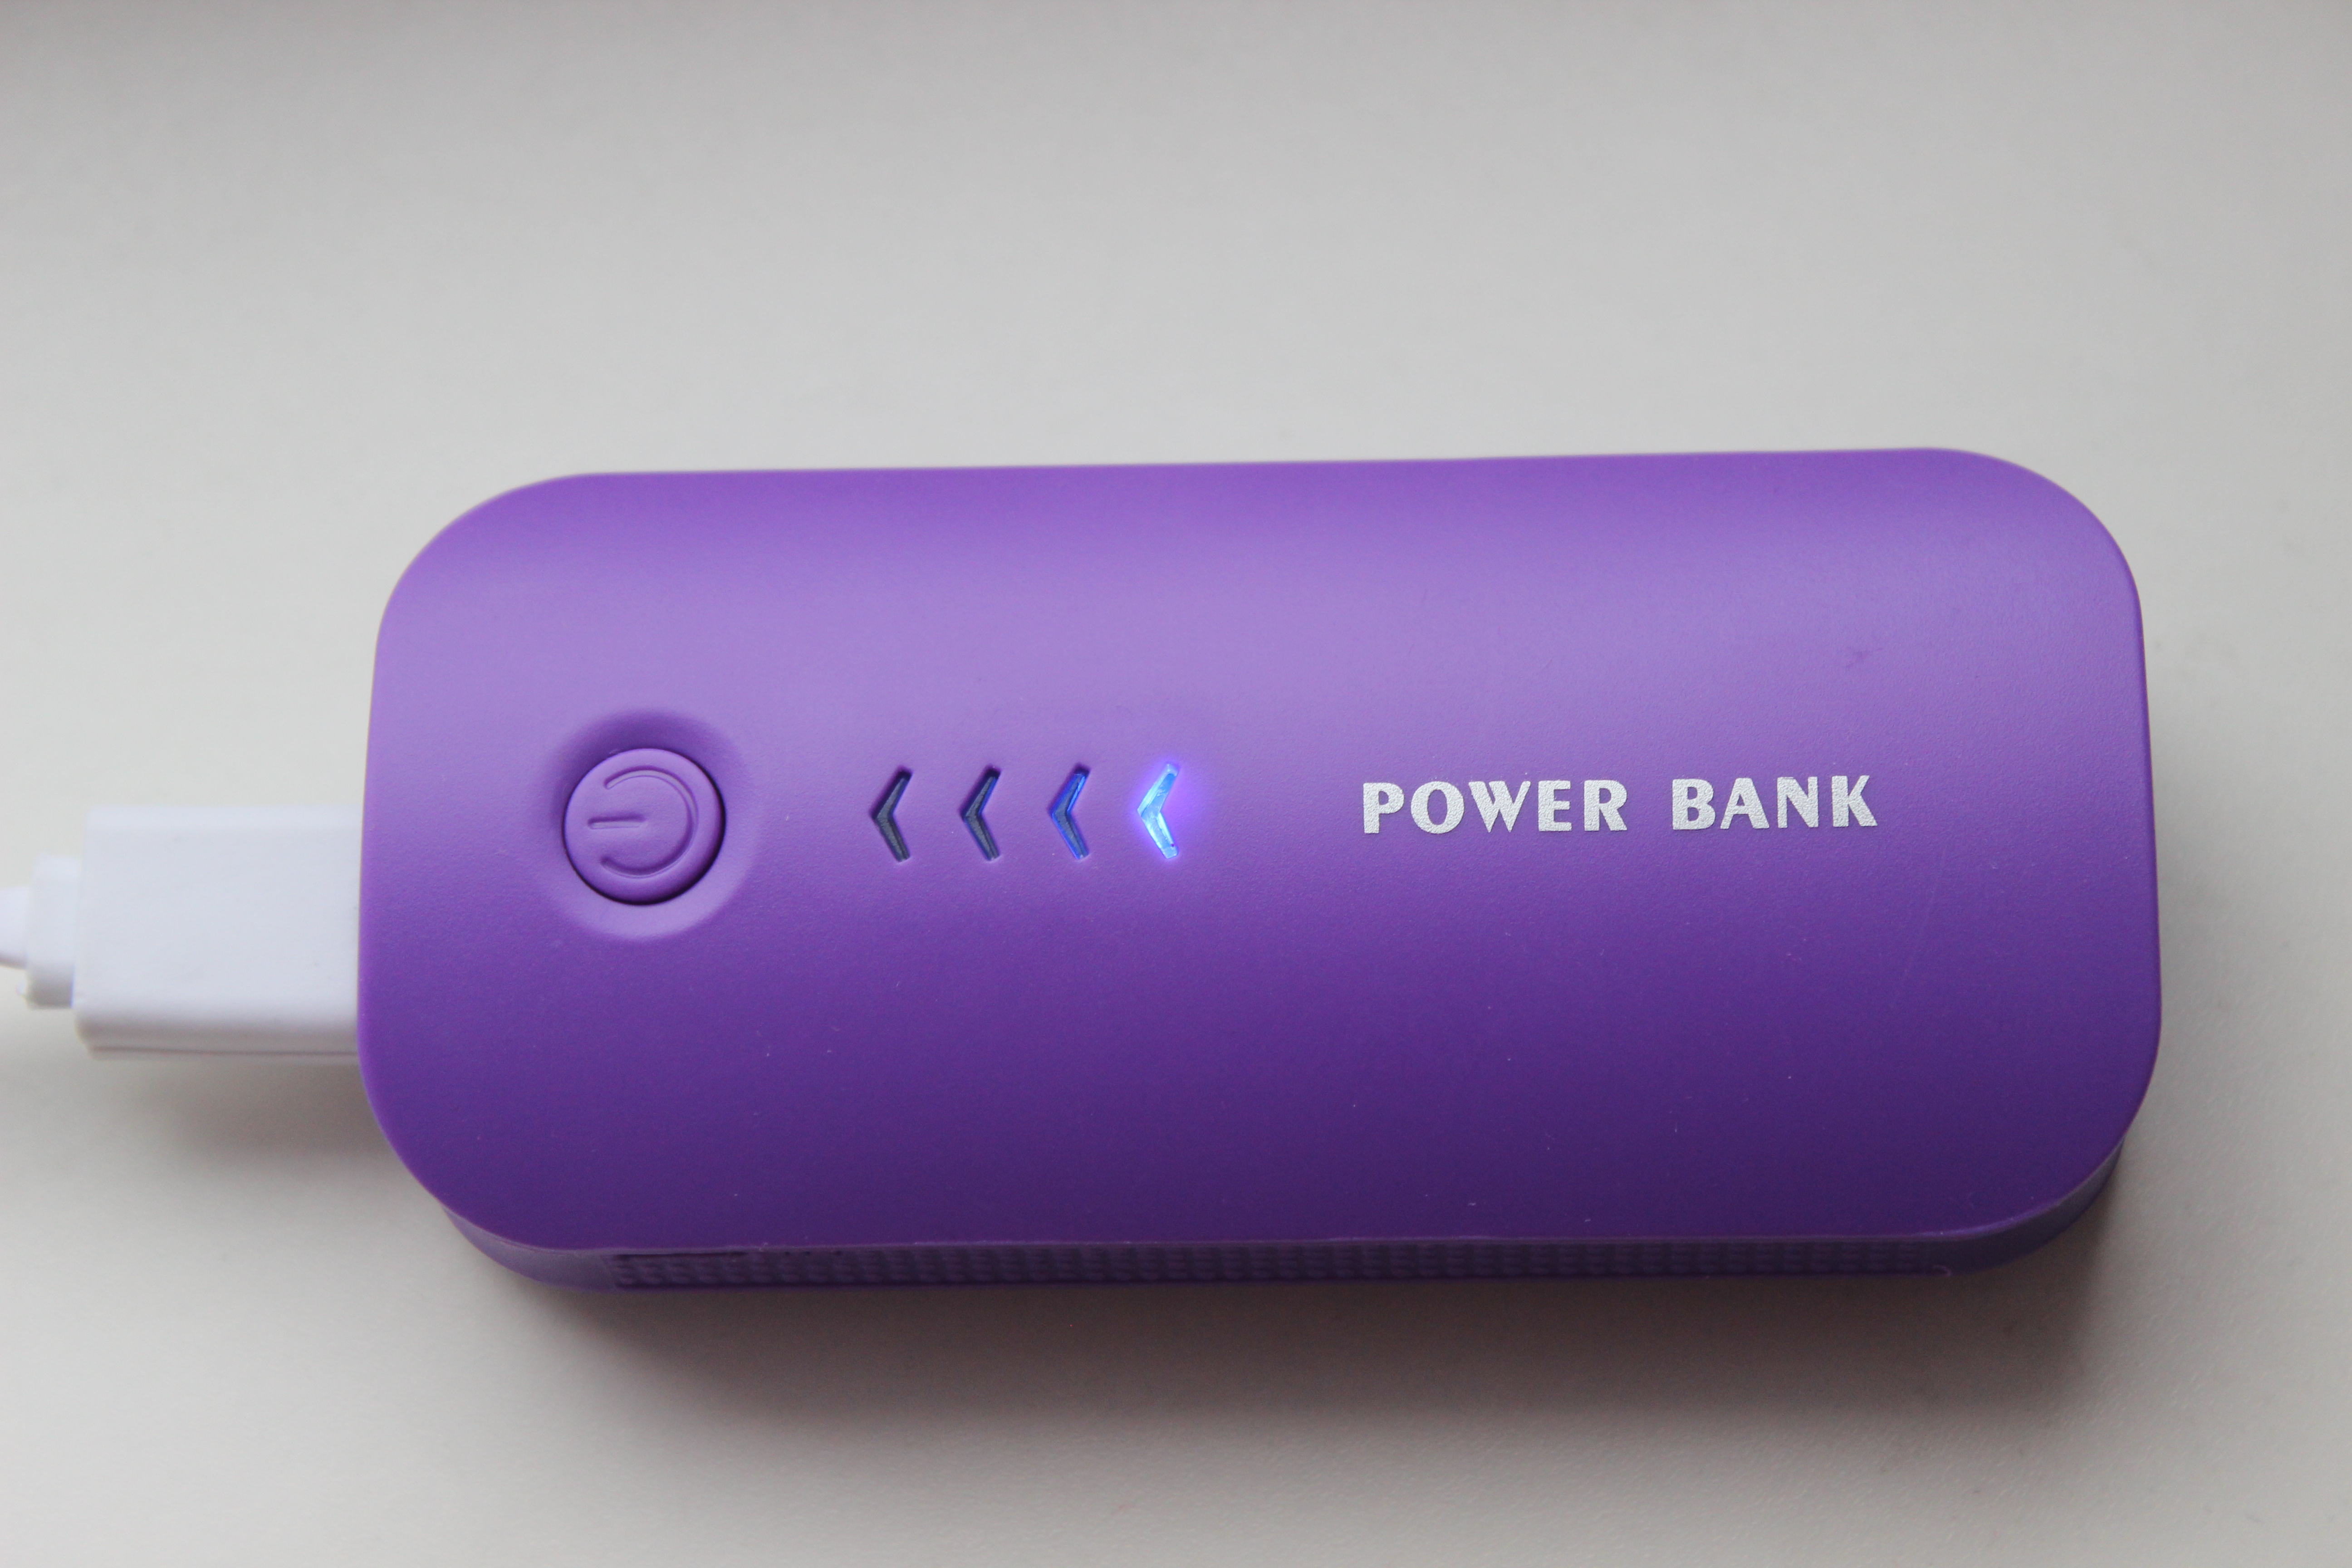 Пауэр банк мощность. Power Bank беспроводная зарядка. Повер банк фиолетовый. Повербанк вид сверху. Power Bank брендированный.